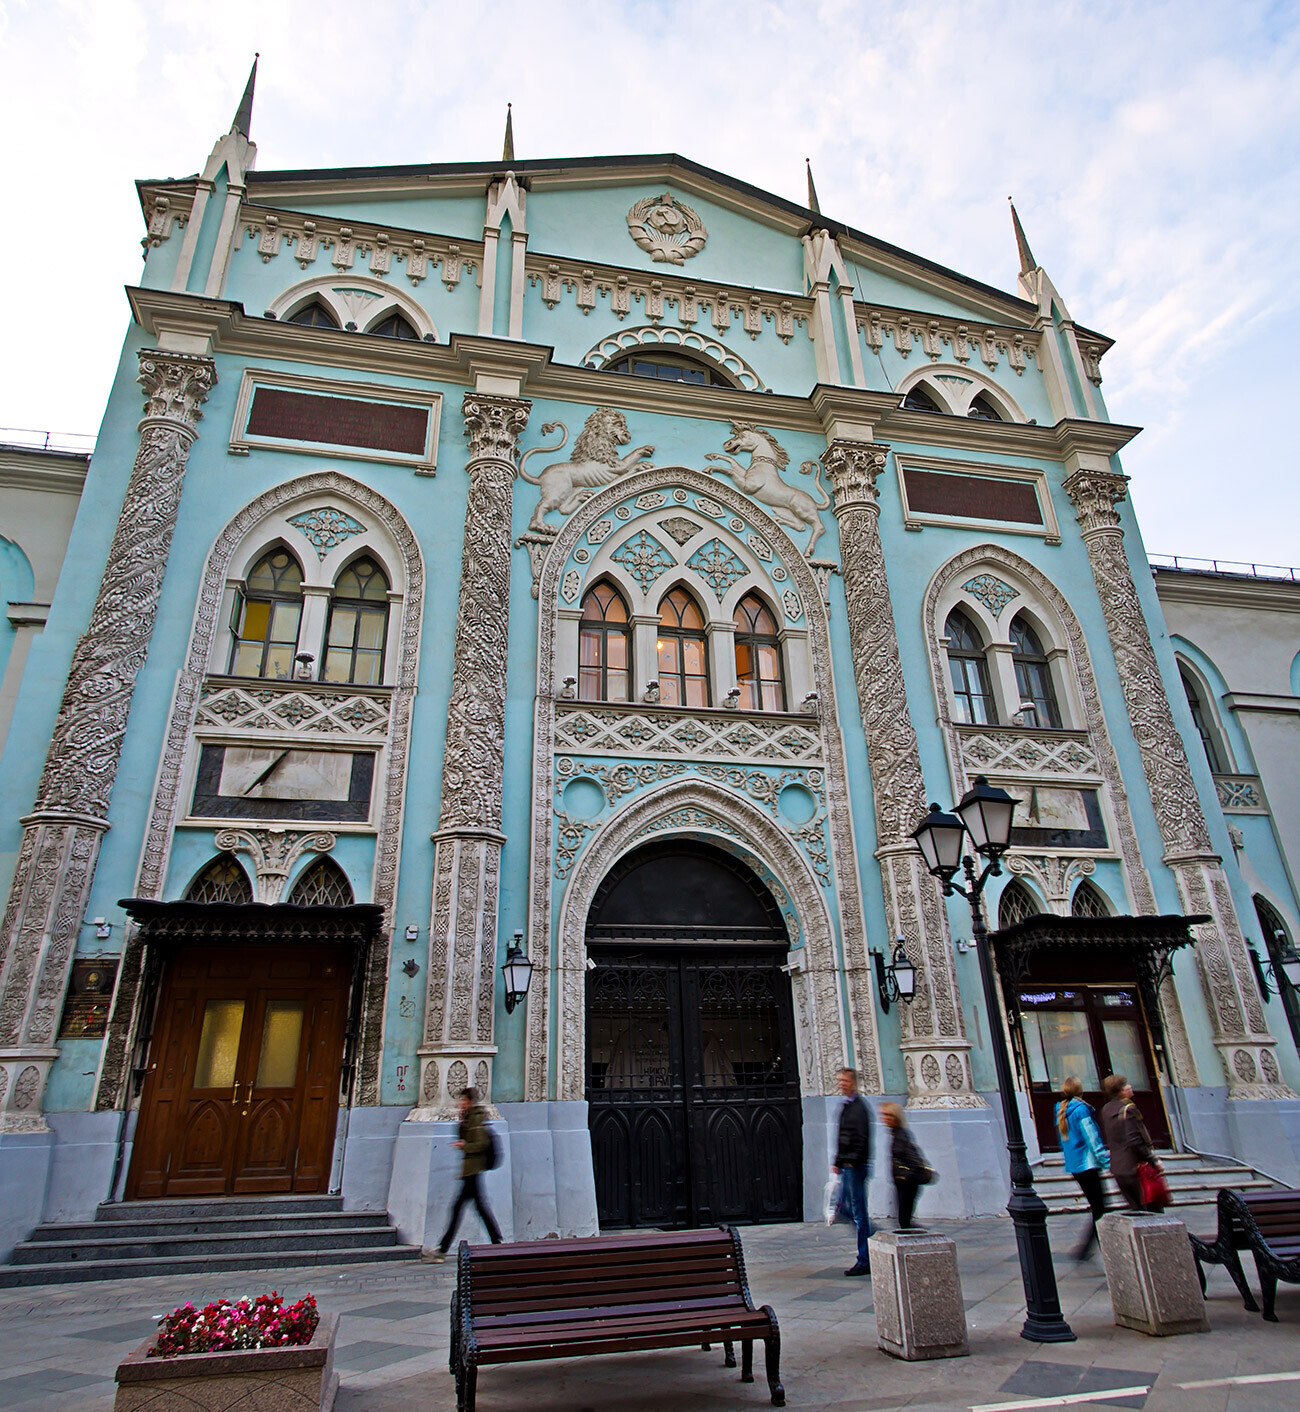 Pátio de Impressão de Moscou (atual sede do Instituto Estatal de Moscou de História e Arquivos)

